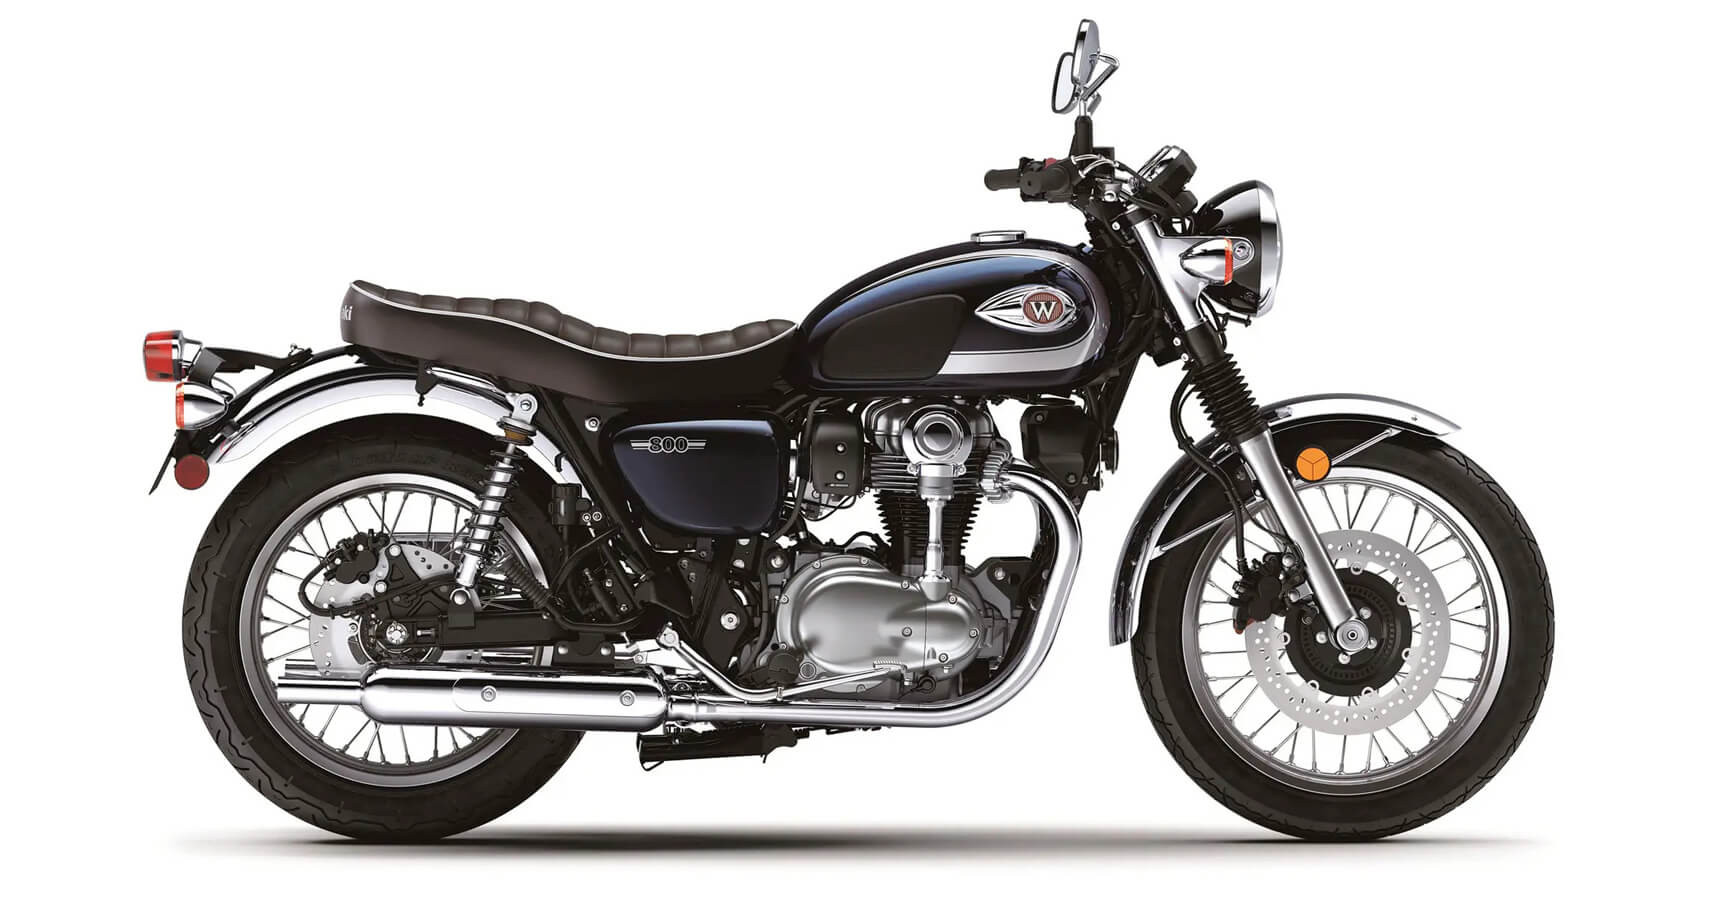 Kawasaki discontinues W800 Motorcycle India